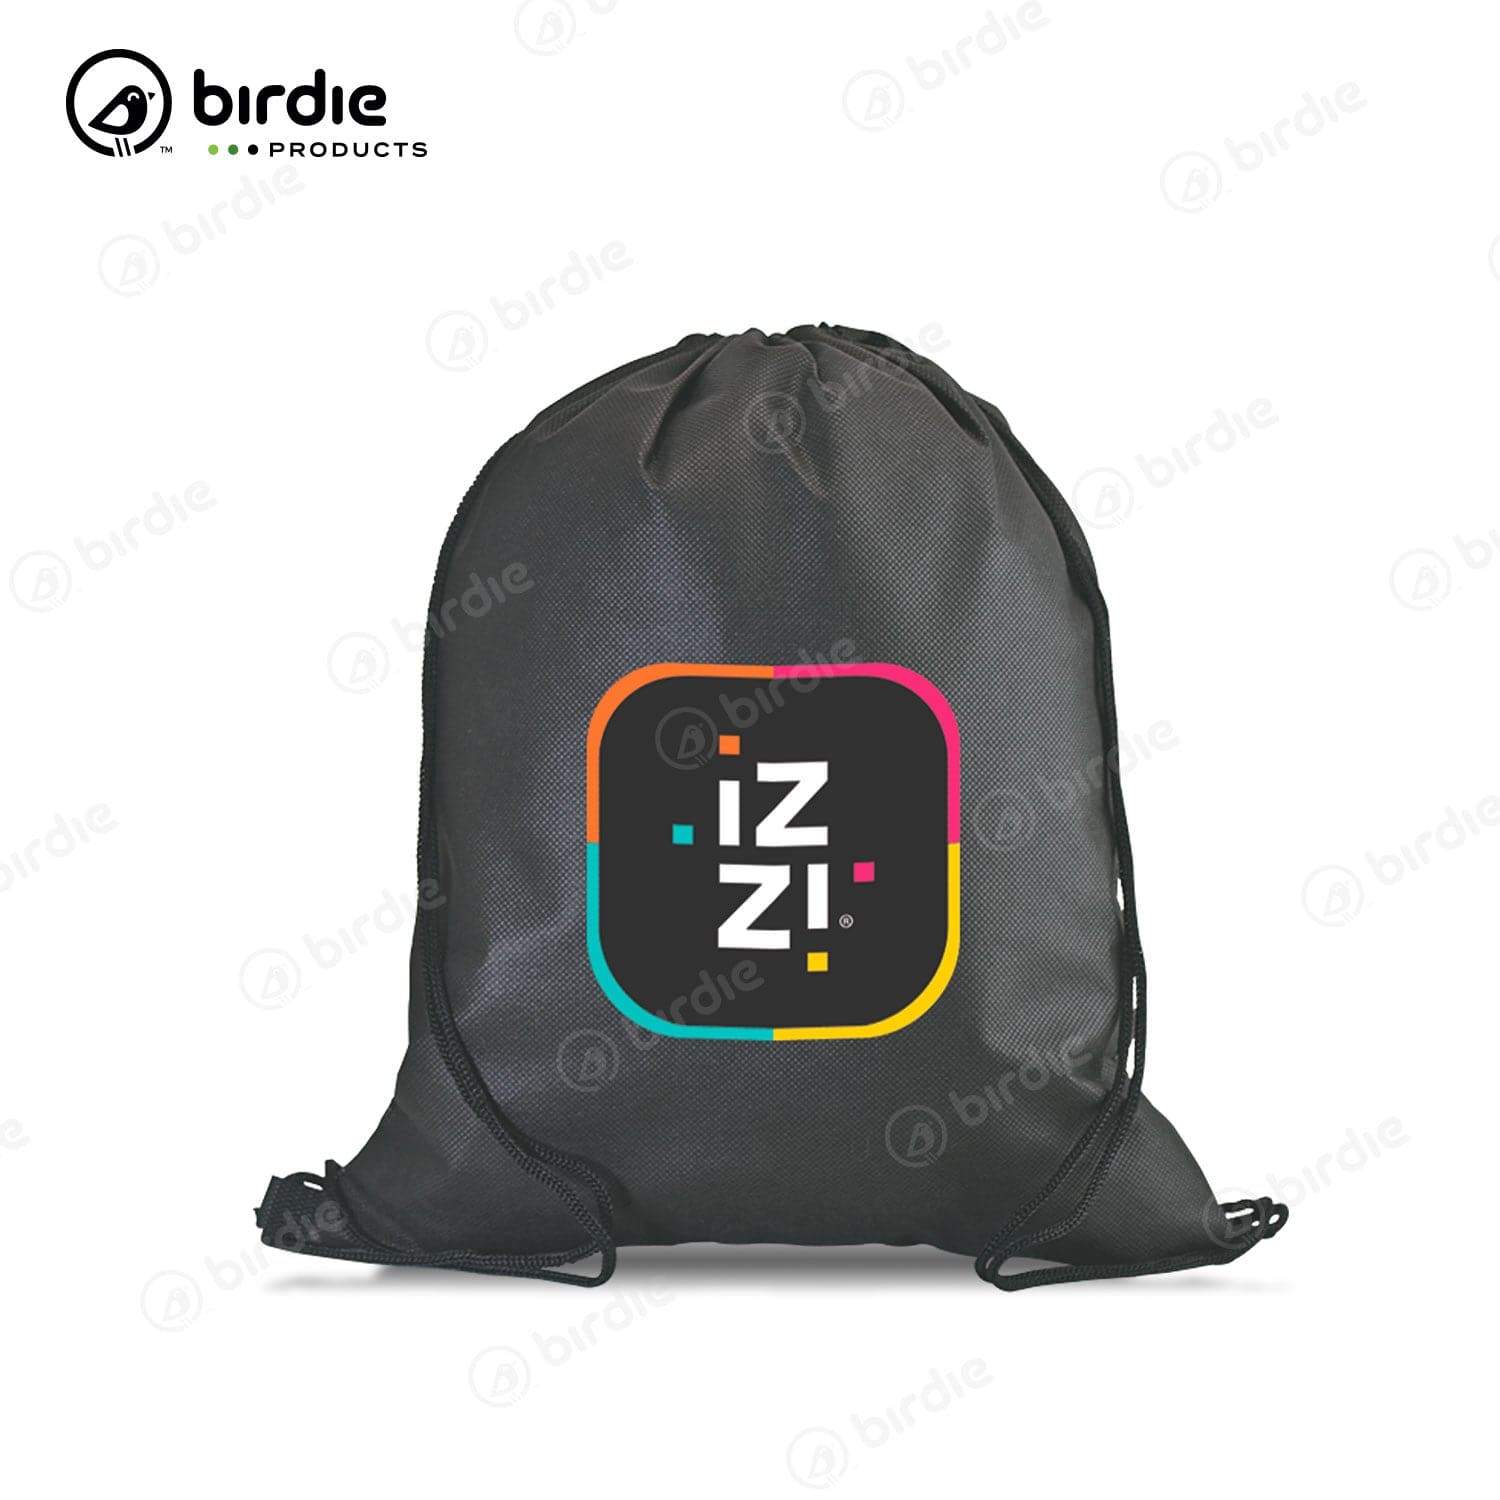 Promotional Birdie Bag Clear Vinyl Tote